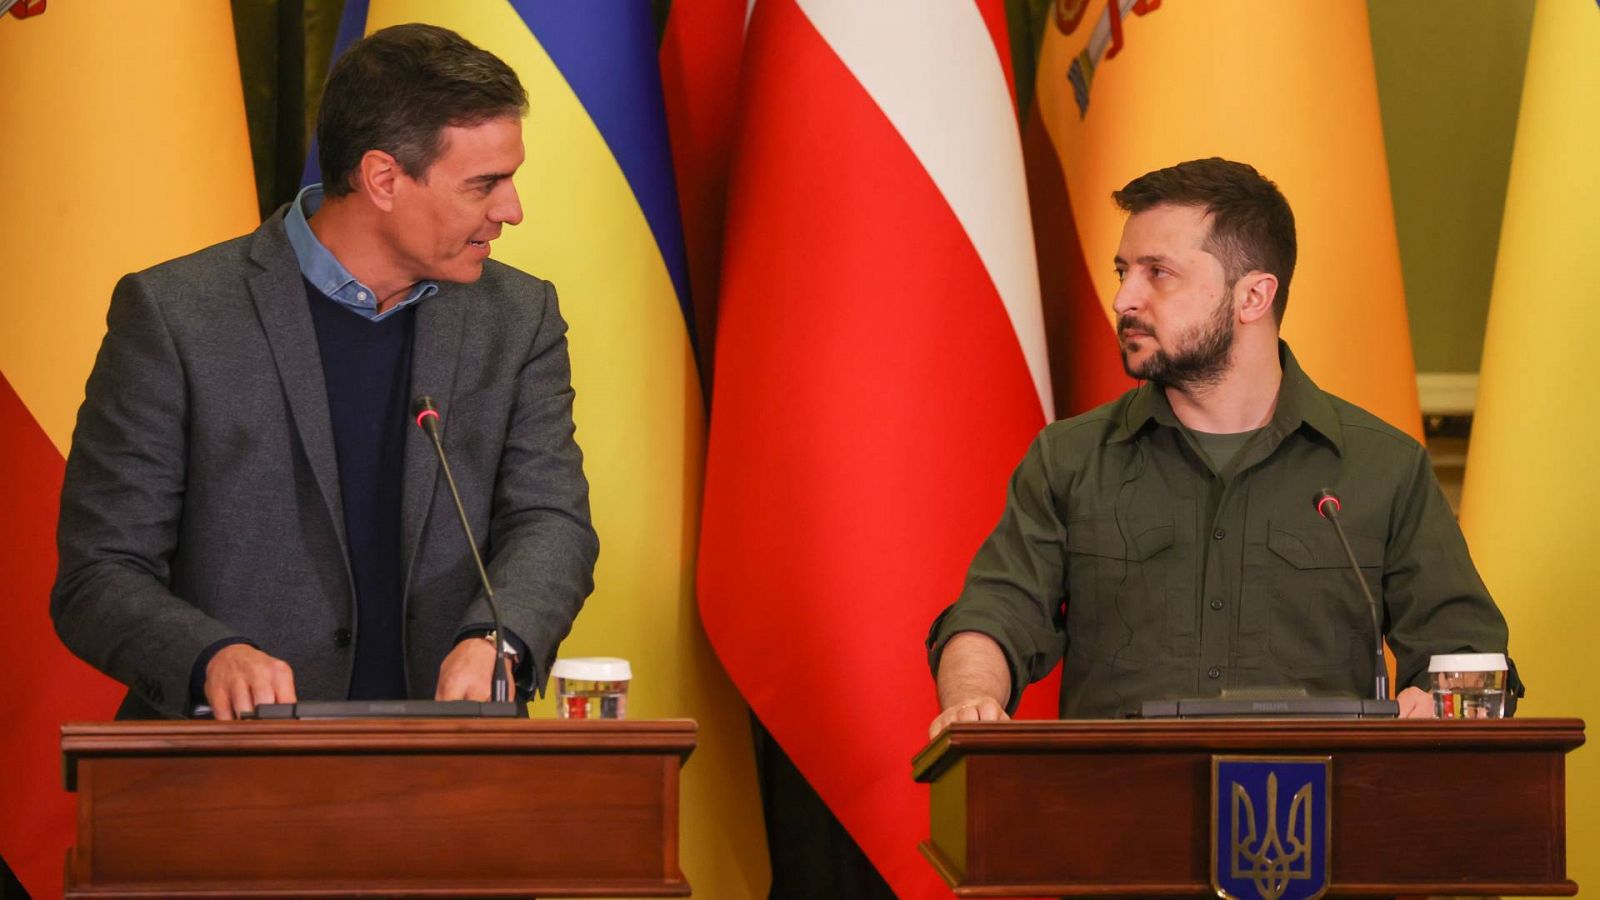 El presidente del Gobierno español, Pedro Sánchez, y su homólogo ucraniano, Volodímir Zelenski, en una imagen de archivo en Kiev